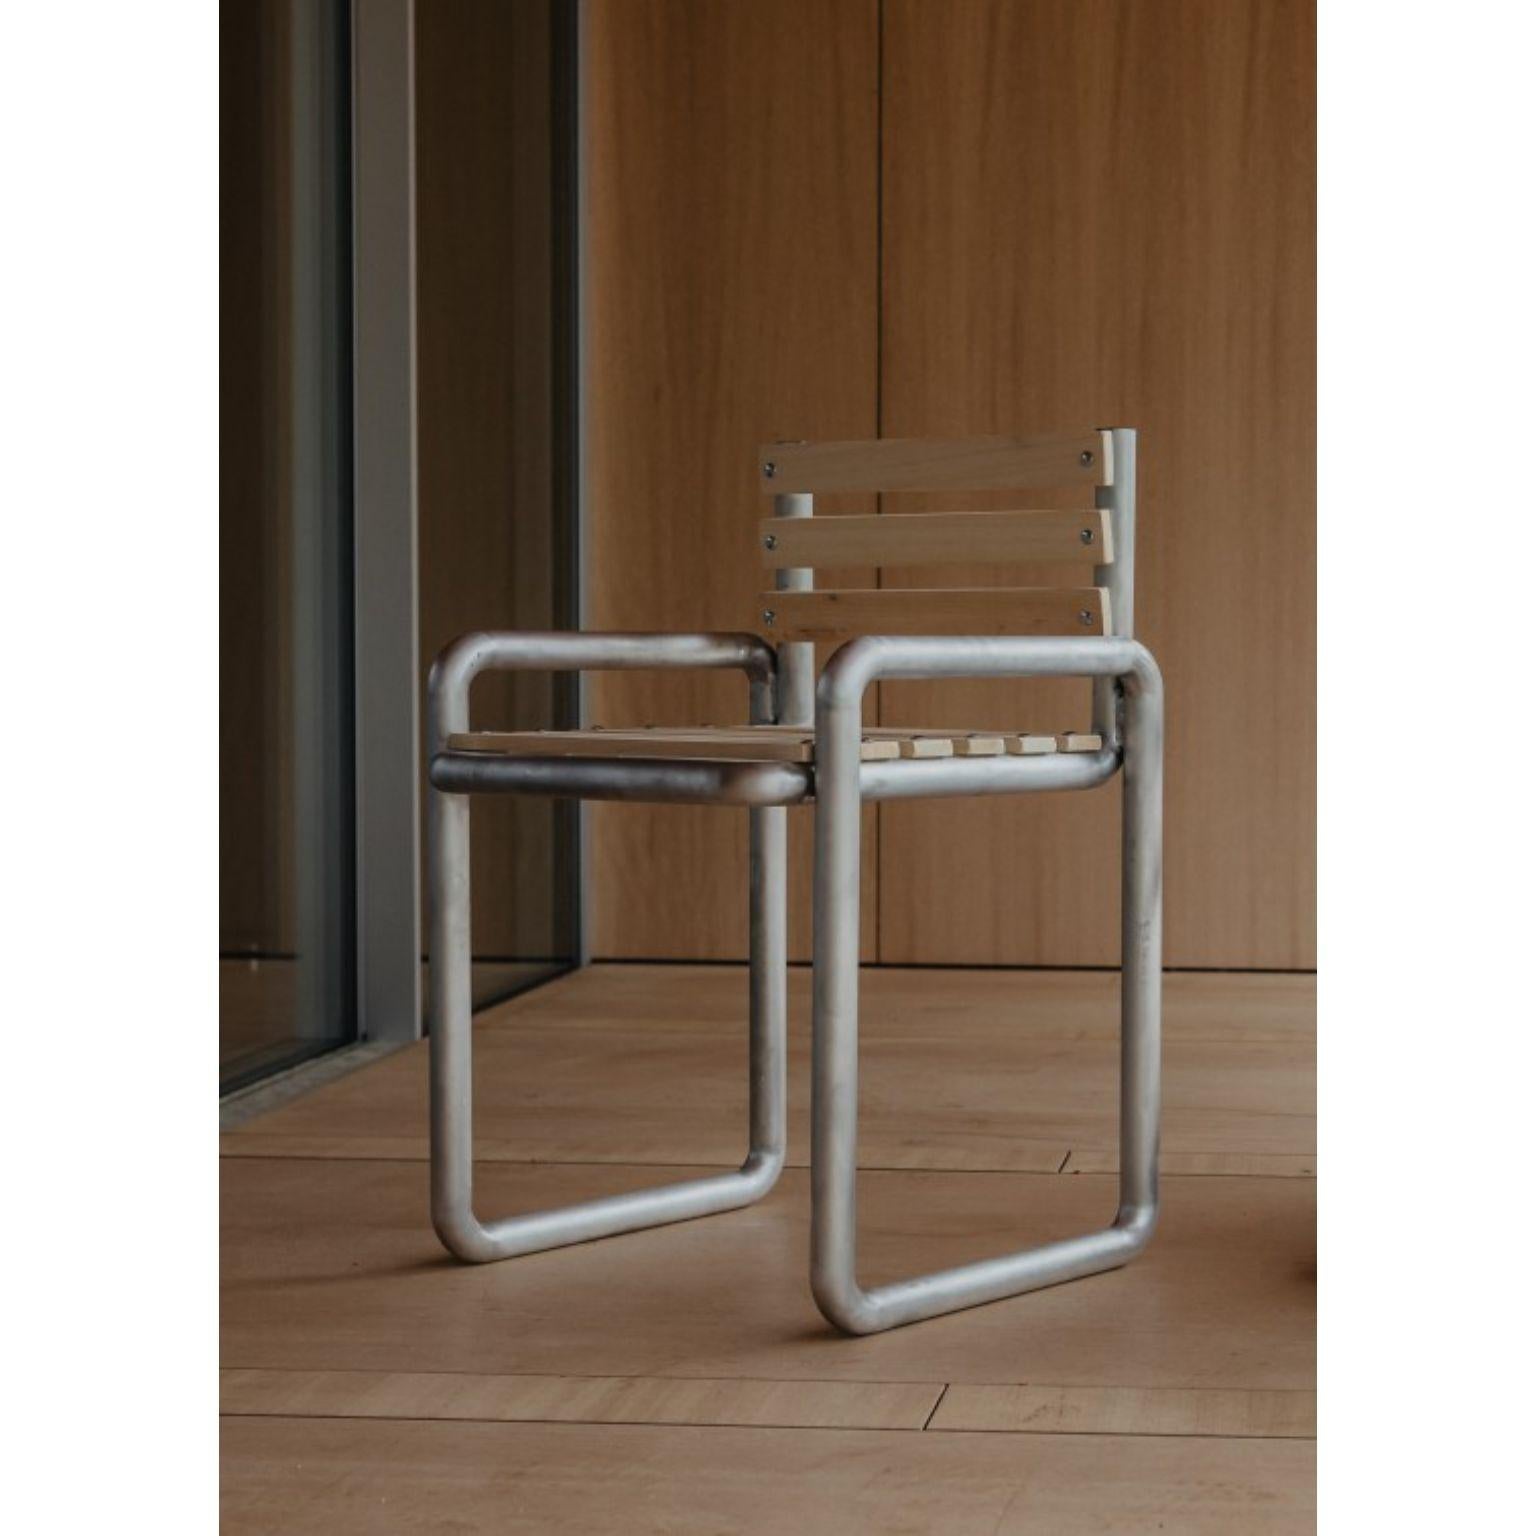 Chaise en aluminium de Mylene Niedzialkowski
Dimensions : D 43 x H 83. SH 41 cm.
MATERIAL : Aluminium et bois.

Formes basiques associées à des airs masculins, Chair est tout en tubes d'aluminium et en bois local léger. u2028Pour un usage extérieur